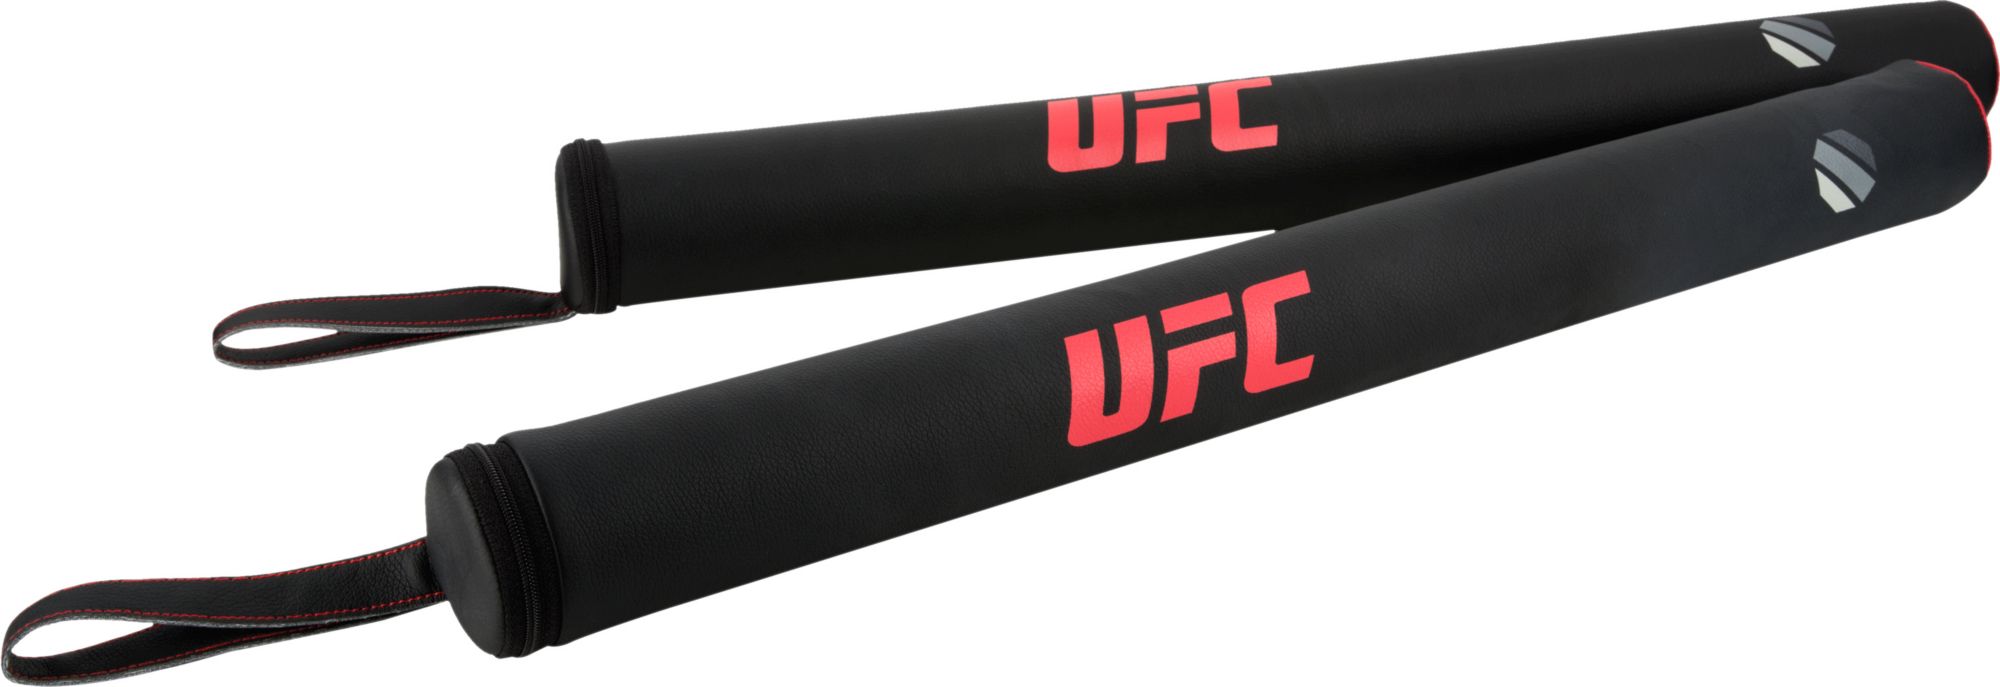 UFC Striking Sticks